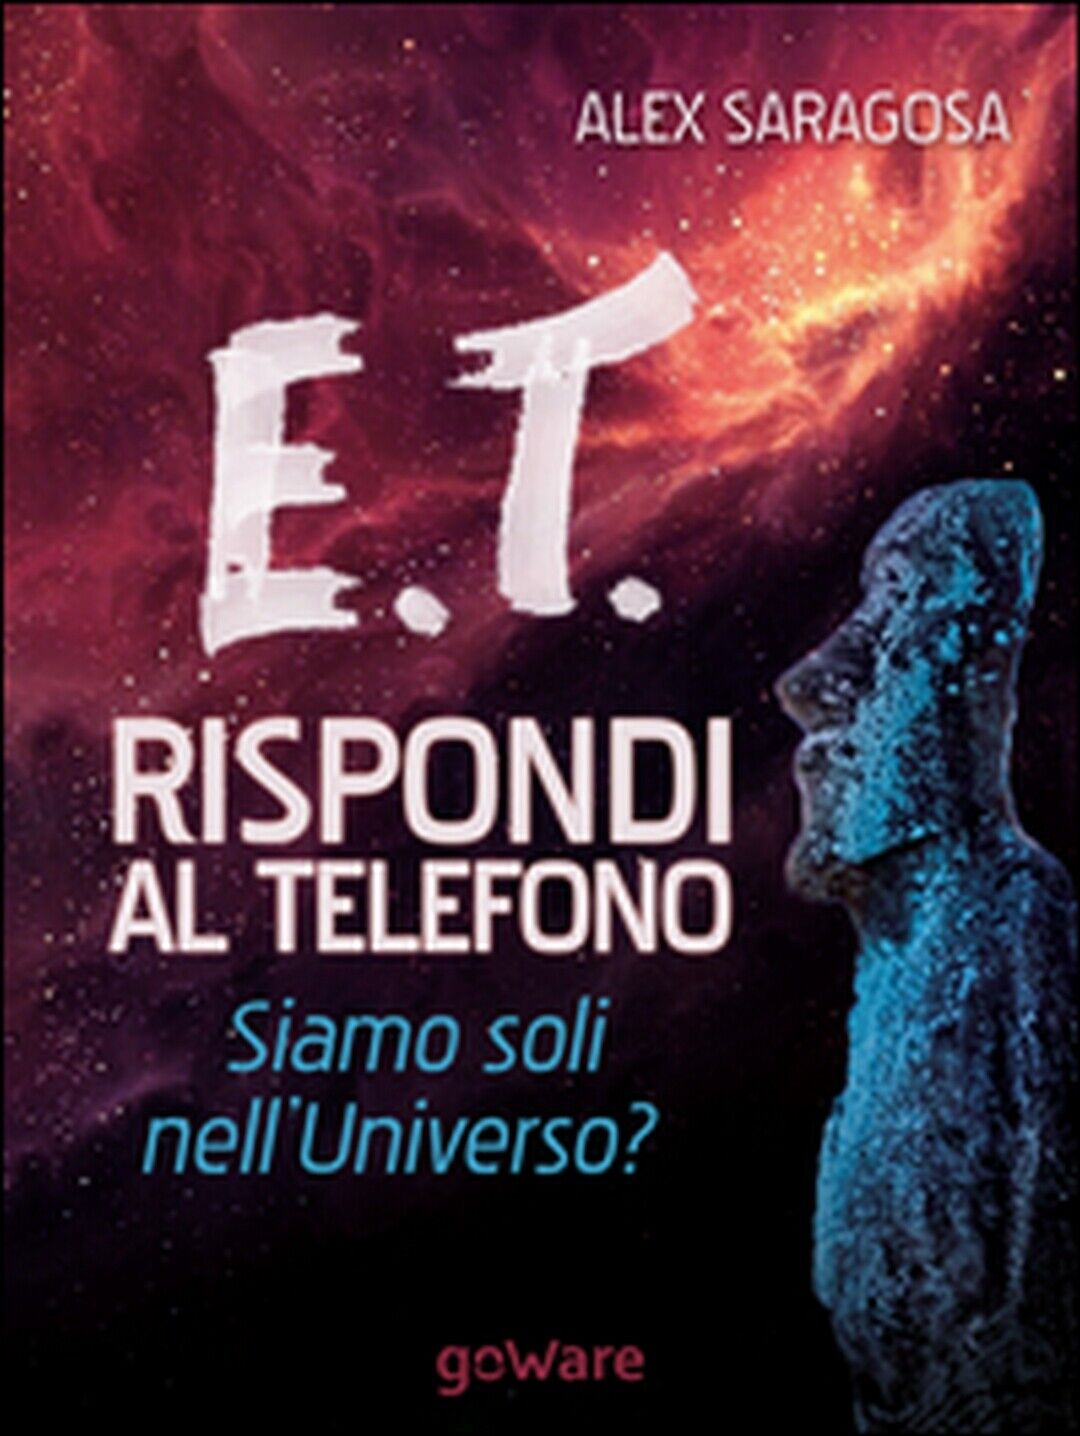 E.T. rispondi al telefono. Siamo soli nelL'universo?, Alex Saragosa,  2015,